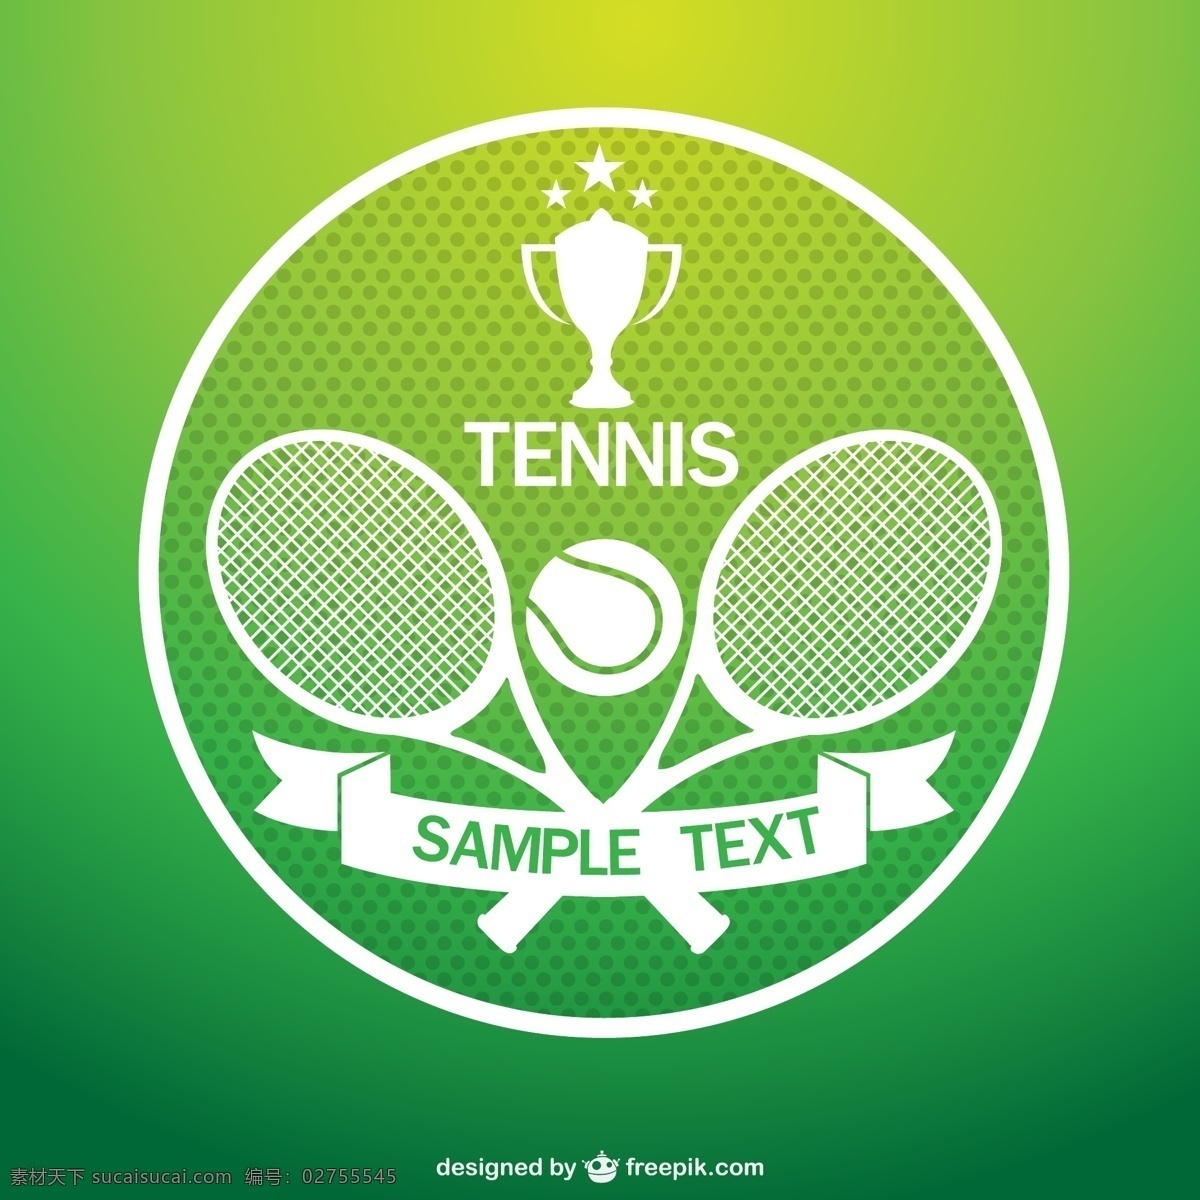 用球 拍 网球 标志 运动 绿化 模板 线 艺术 体育 图形 布局 游戏 平面设计 球 徽章 现场 白色 冠军 比赛 绿色